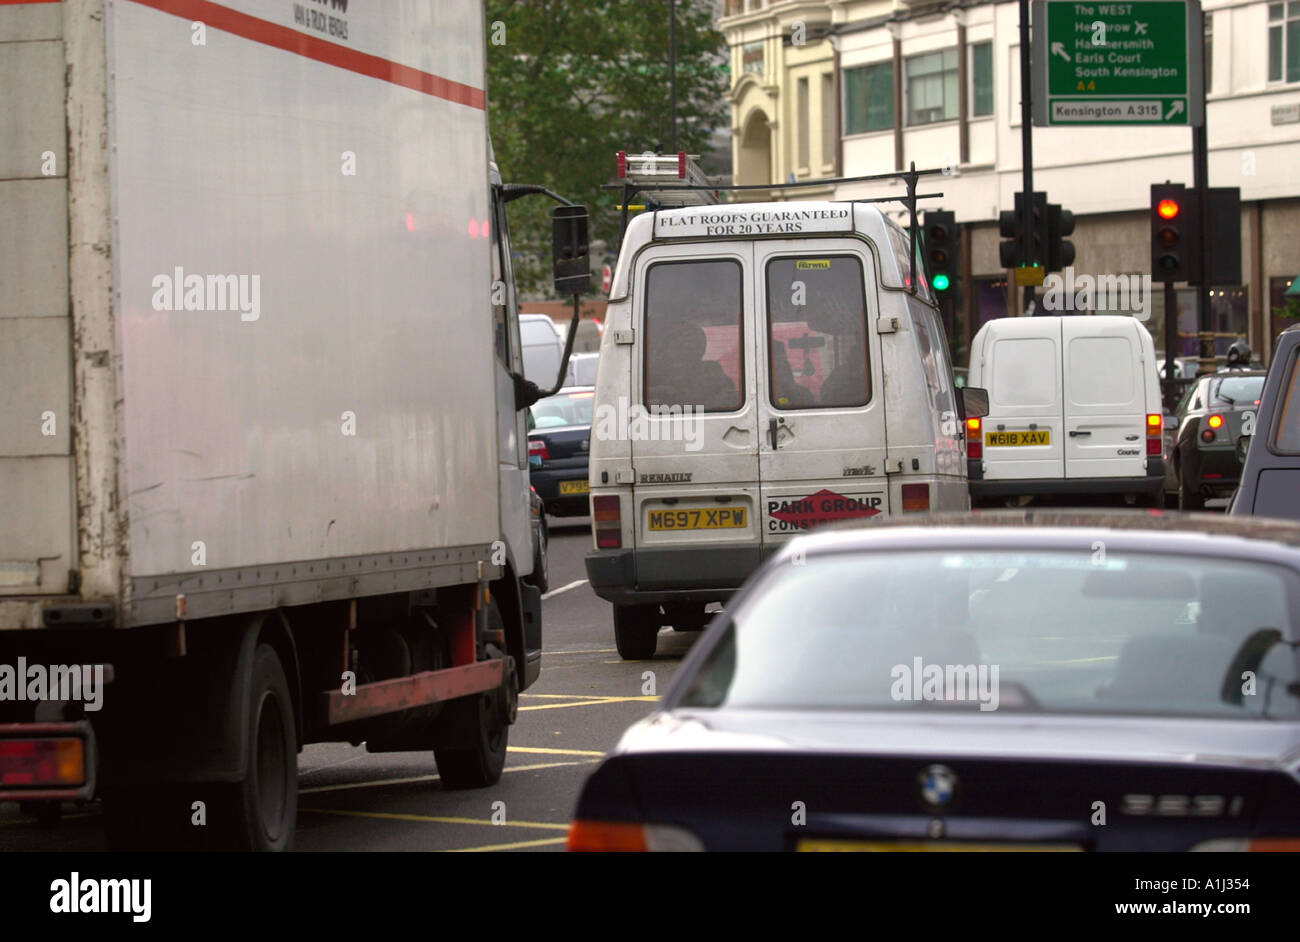 EINEN LKW TRANSPORTER UND AUTOS IN EINER LONDON TRAFFIC JAM UK Stockfoto